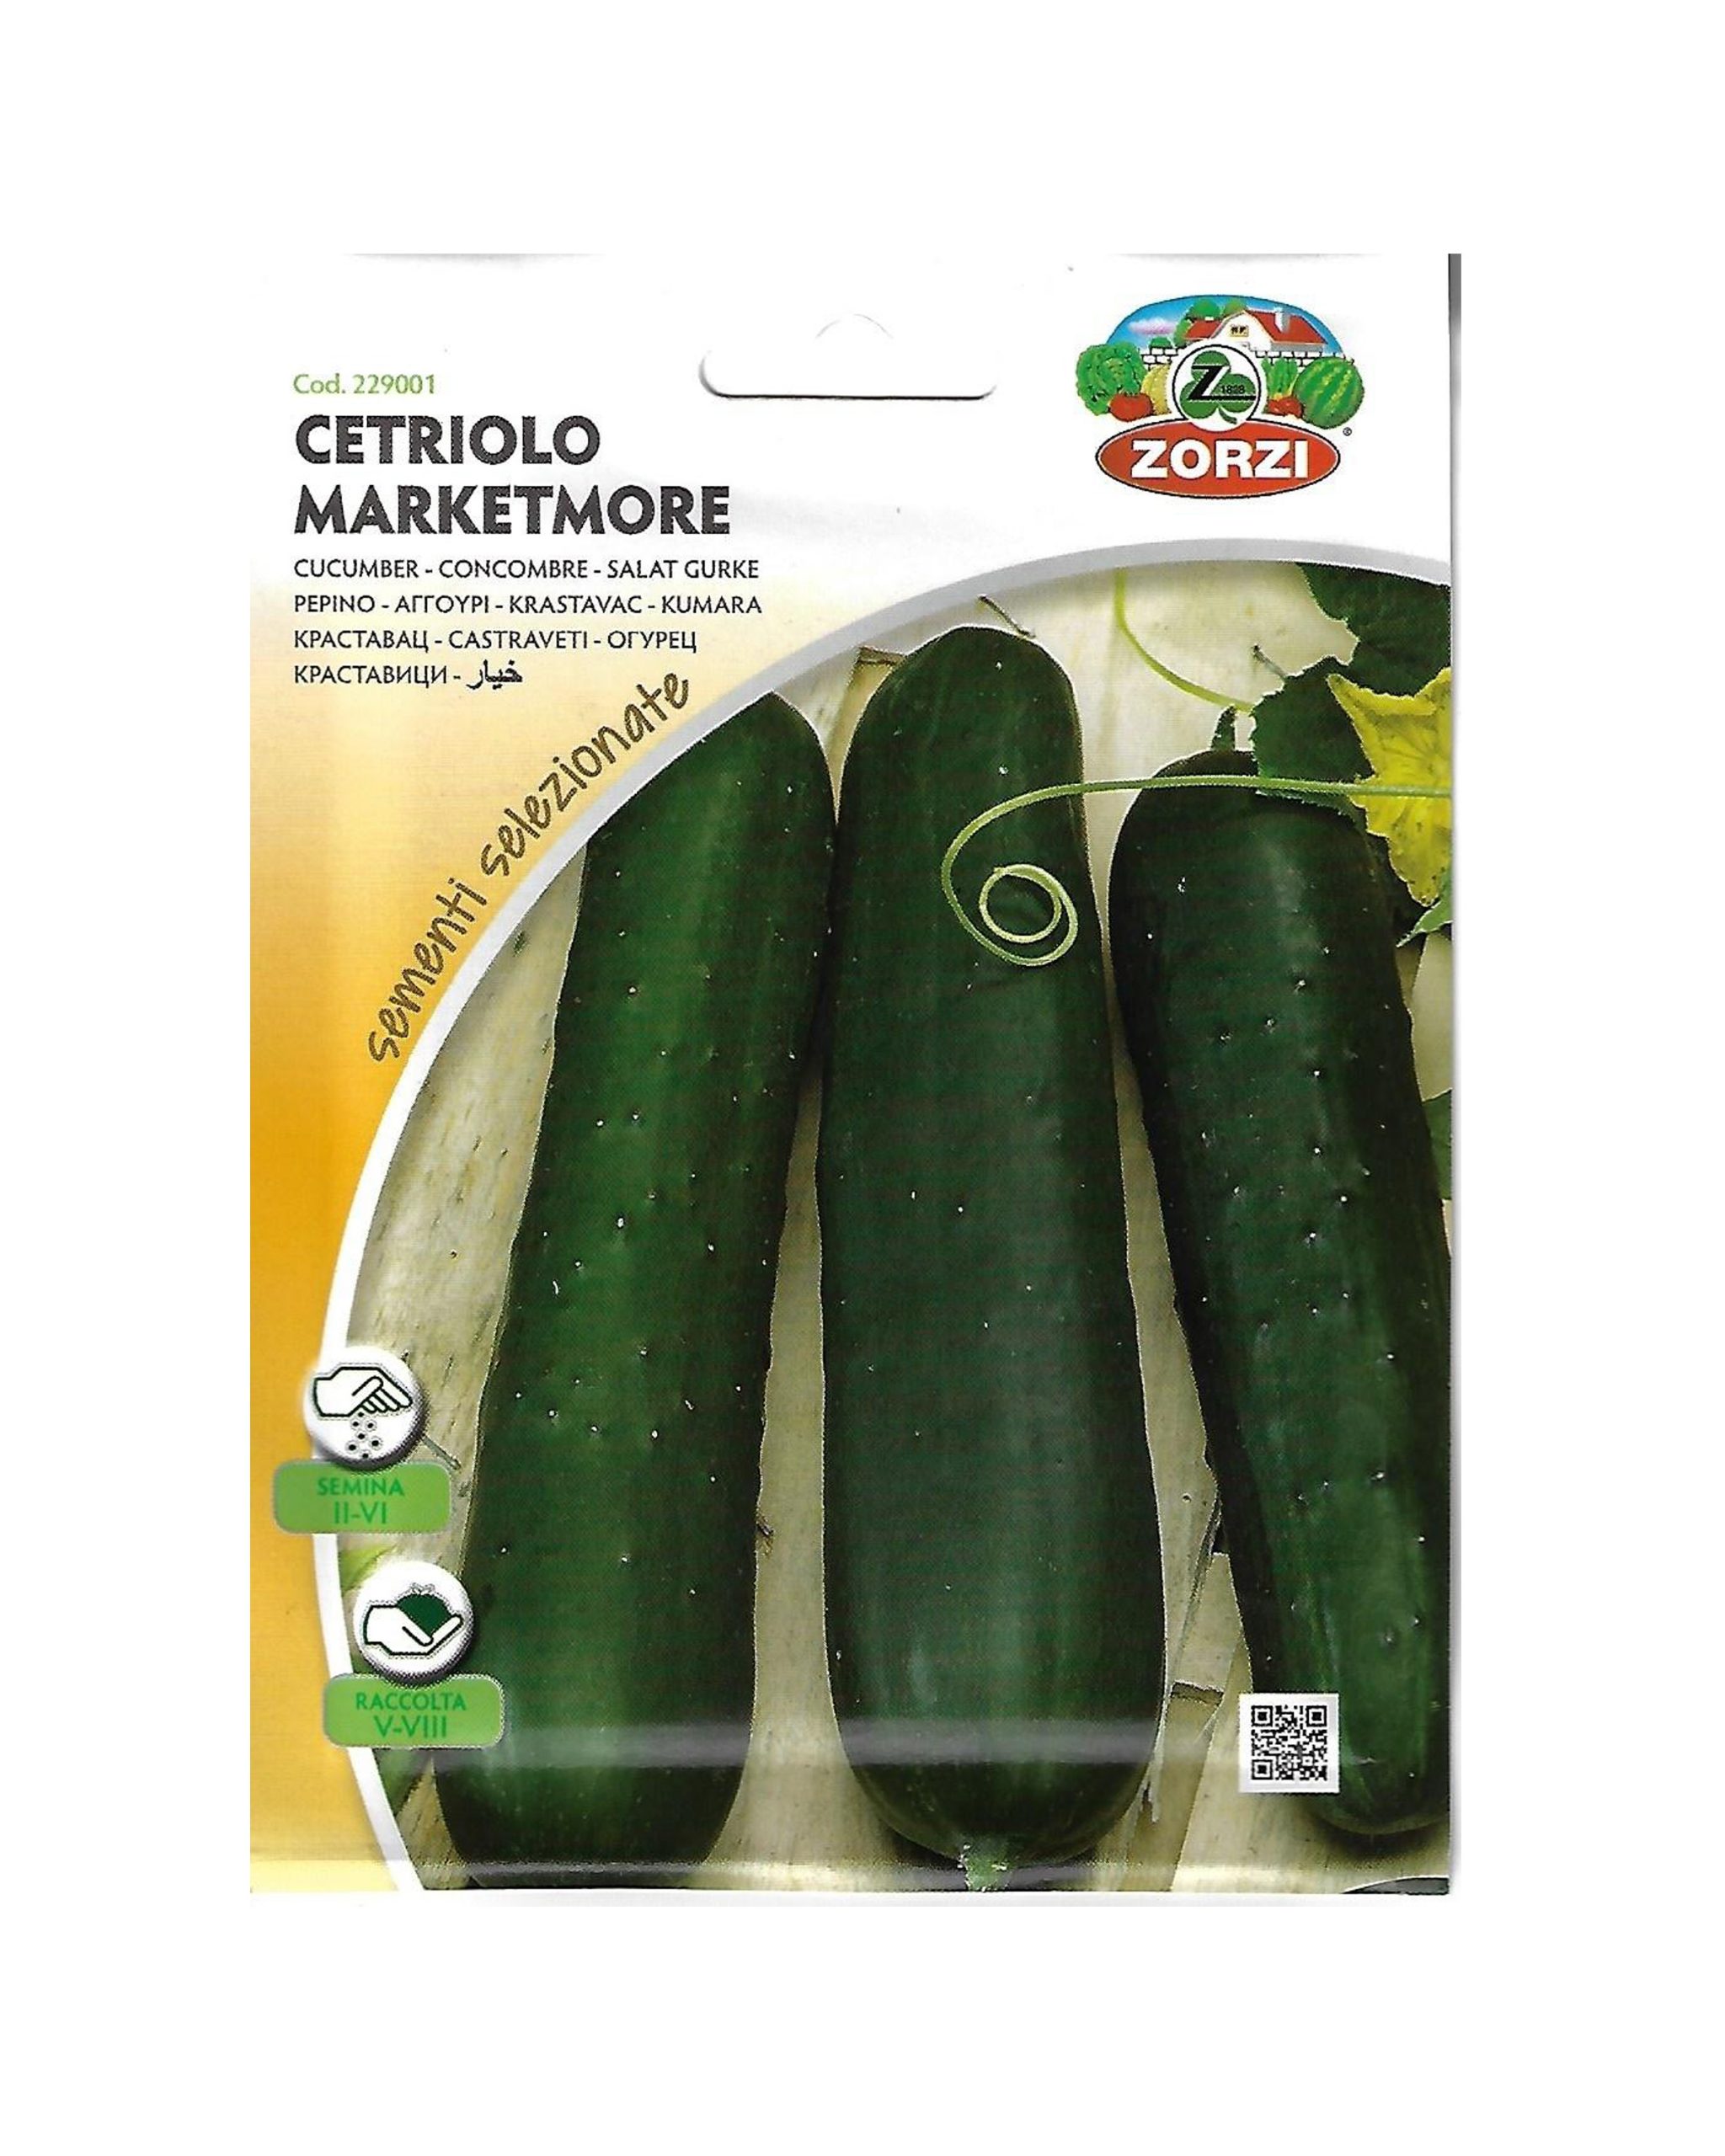 Buy Cucumber Online on Qetaat.com